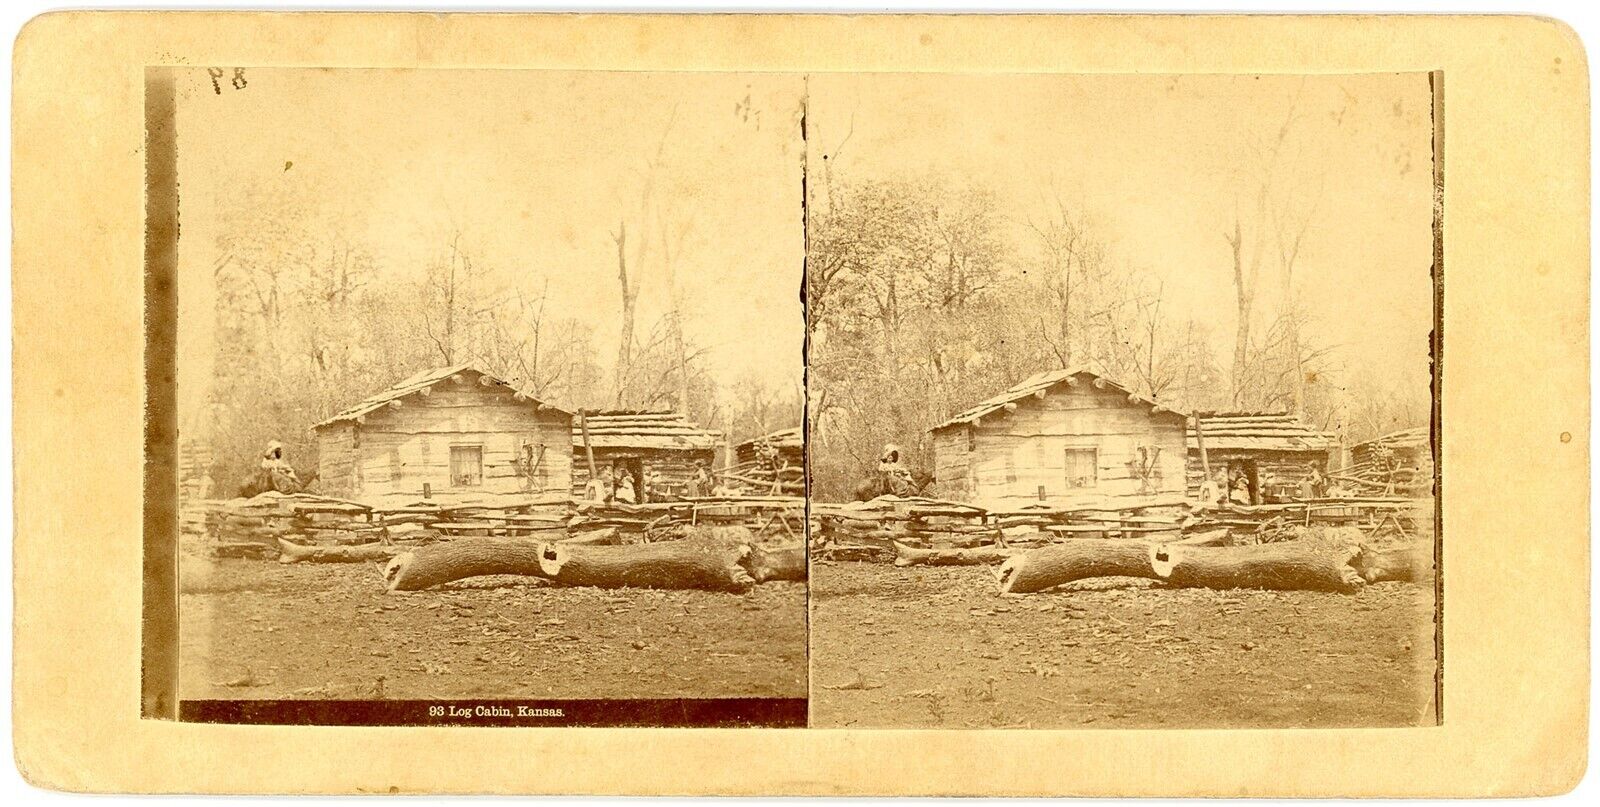 KANSAS SV - Log Cabin - 1890s RARE